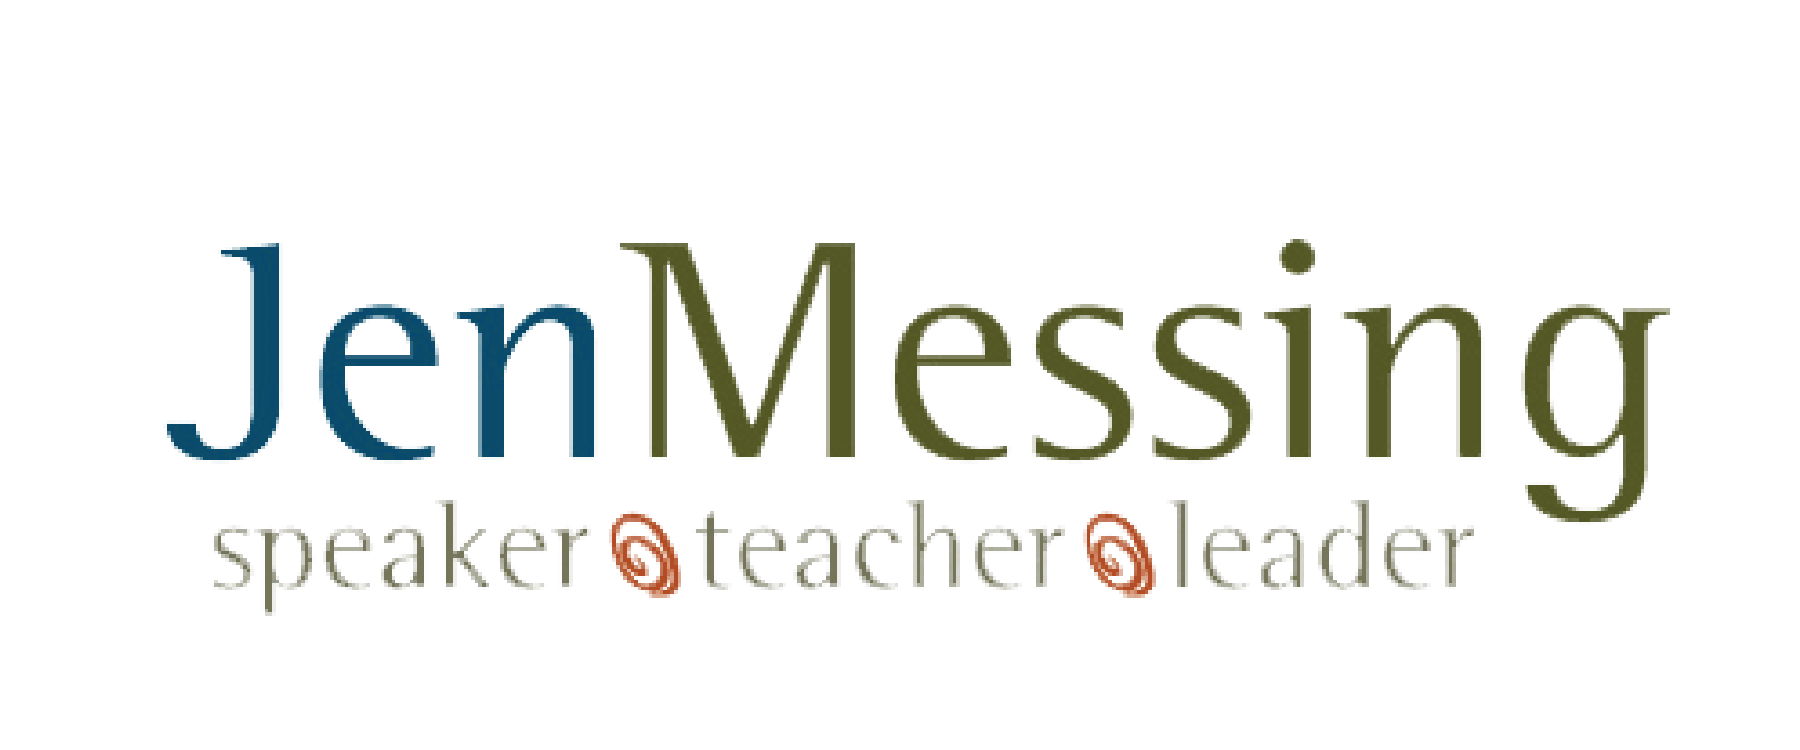 Jen Messing Logo - Teacher, Leader, Speaker